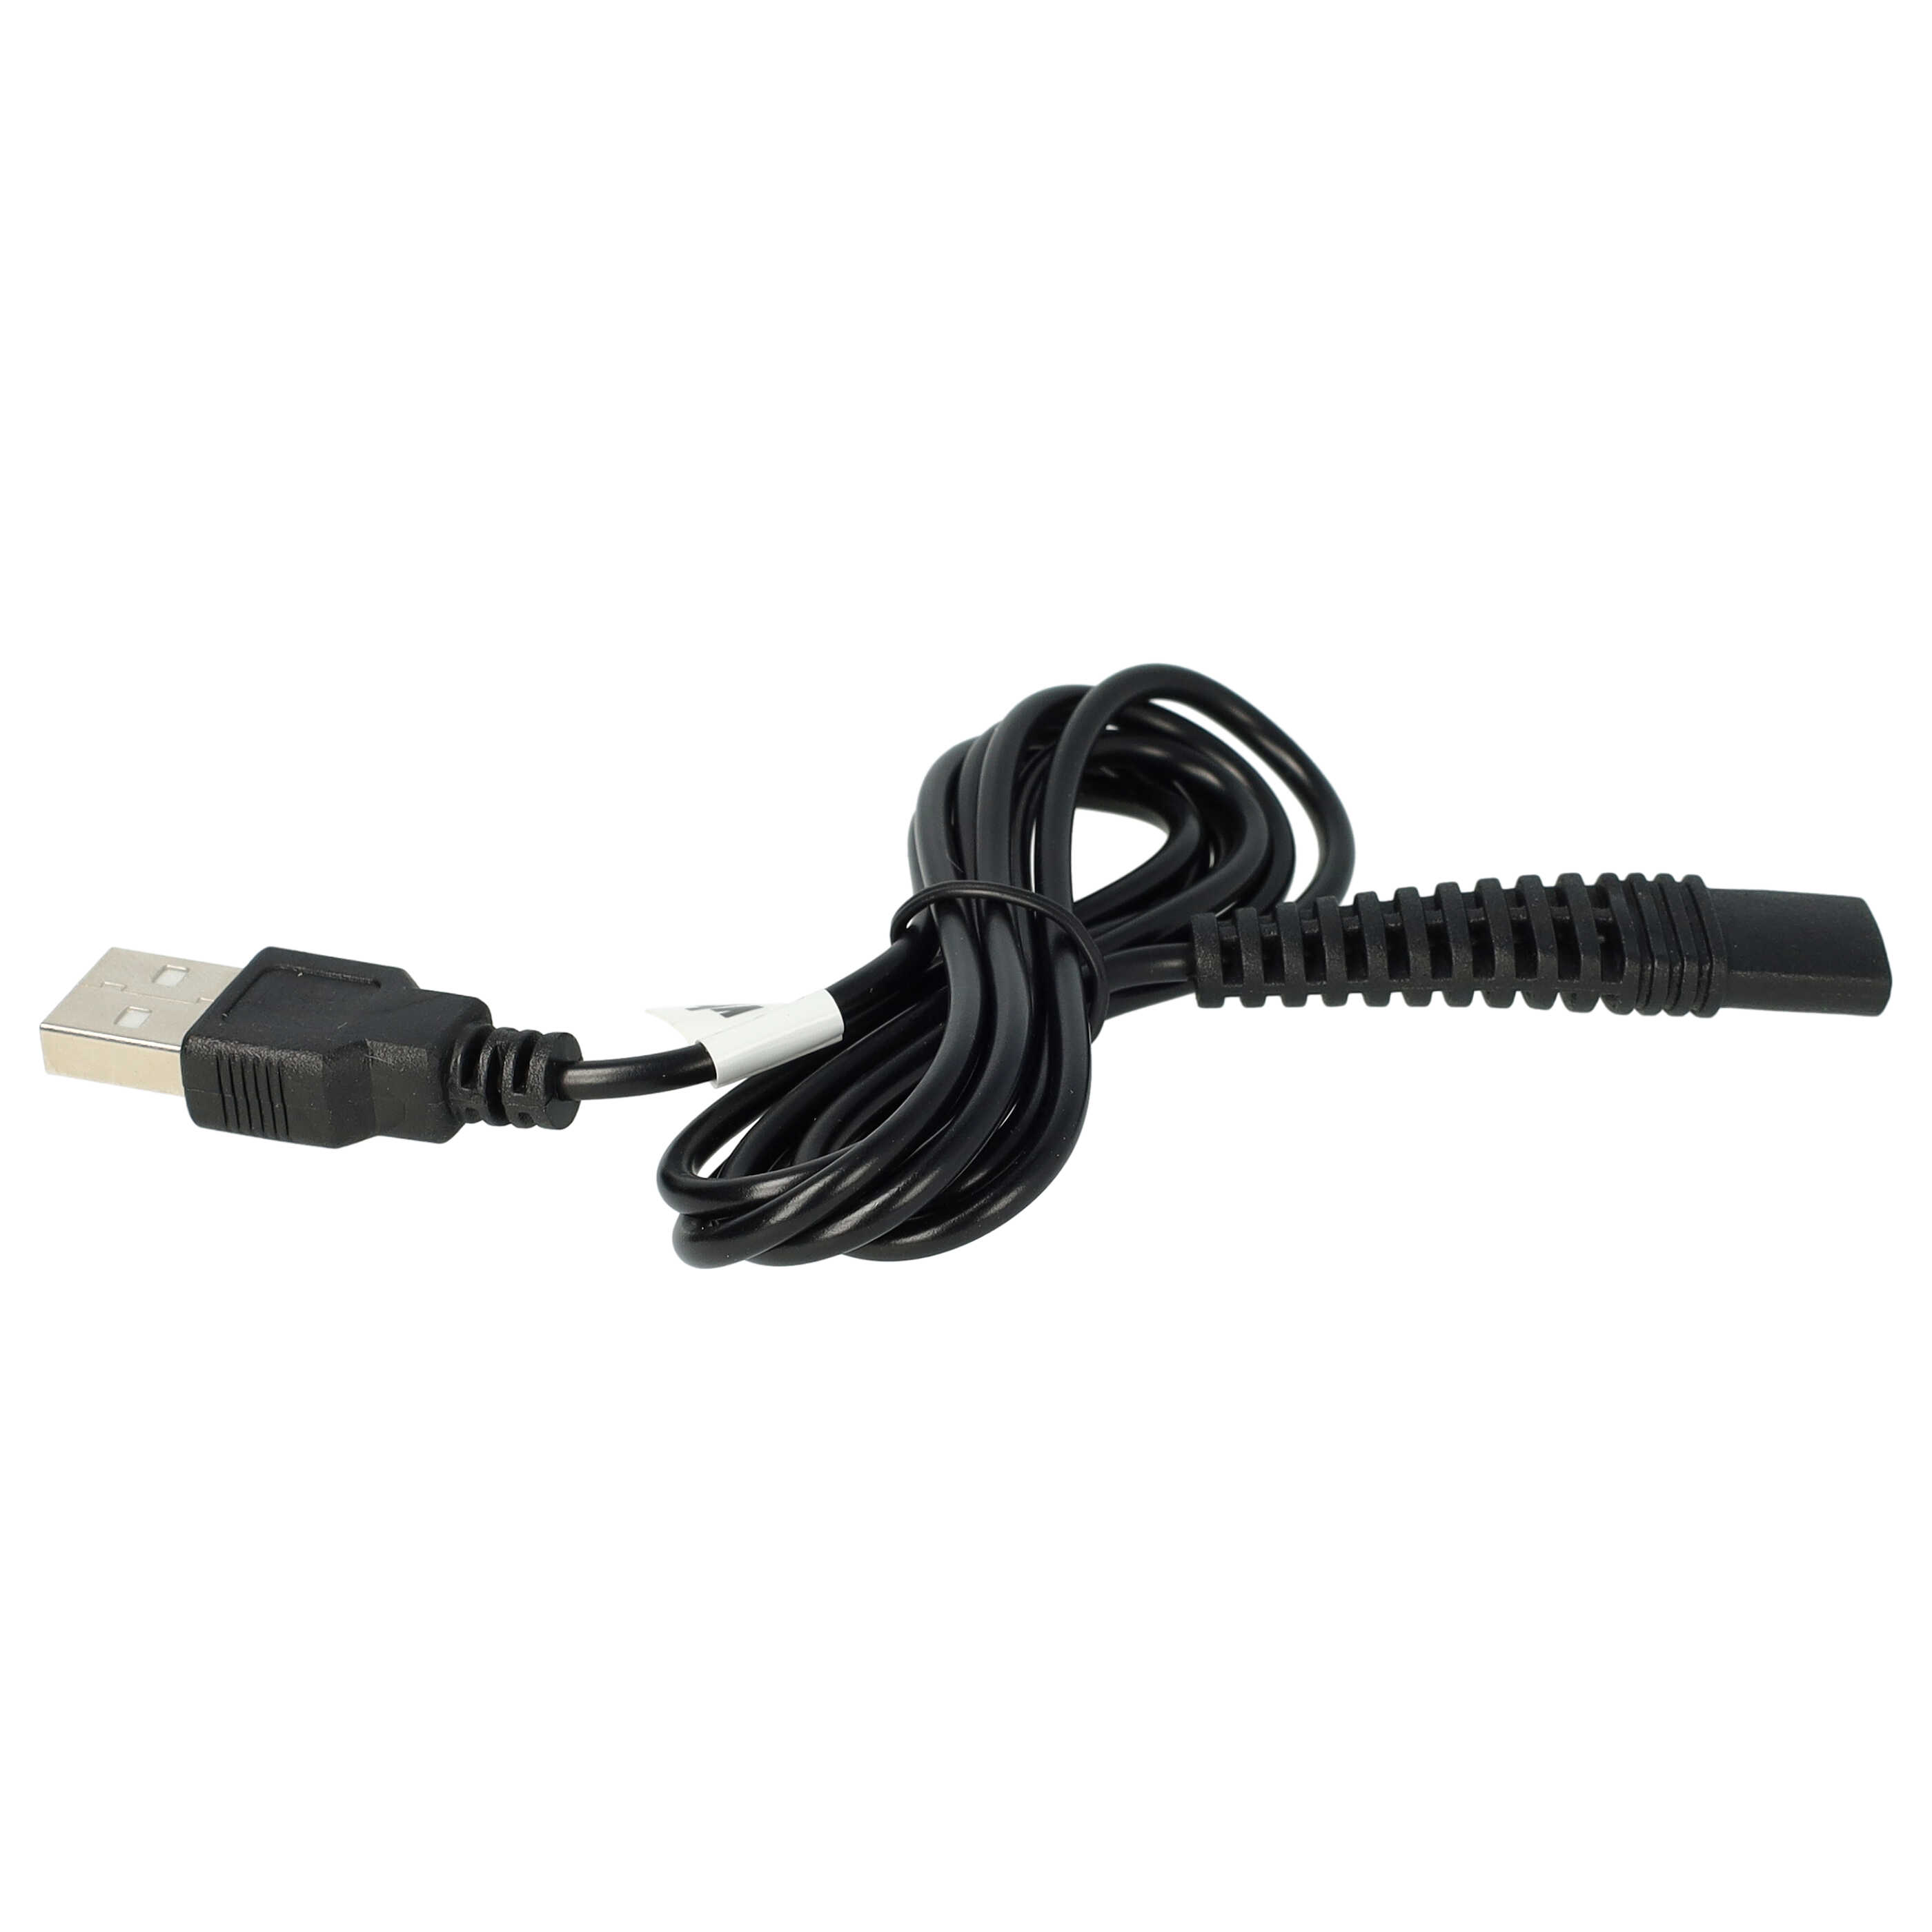 Cable de carga USB para afeitadoras, cepillo de dientes, etc. Braun, Oral-B HC20 (5611) - 120 cm